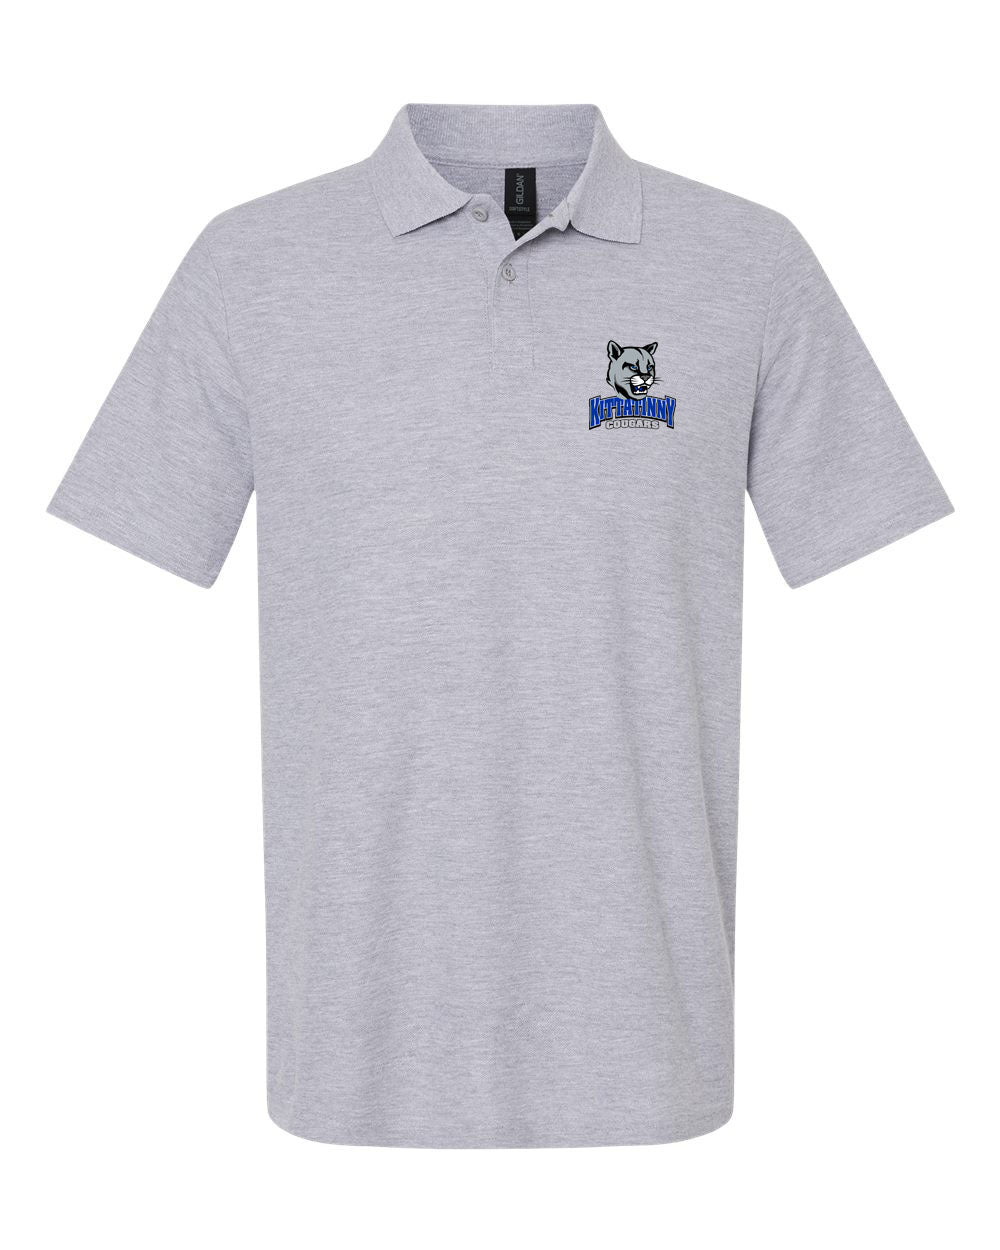 KRHS Design 20 Polo T-Shirt